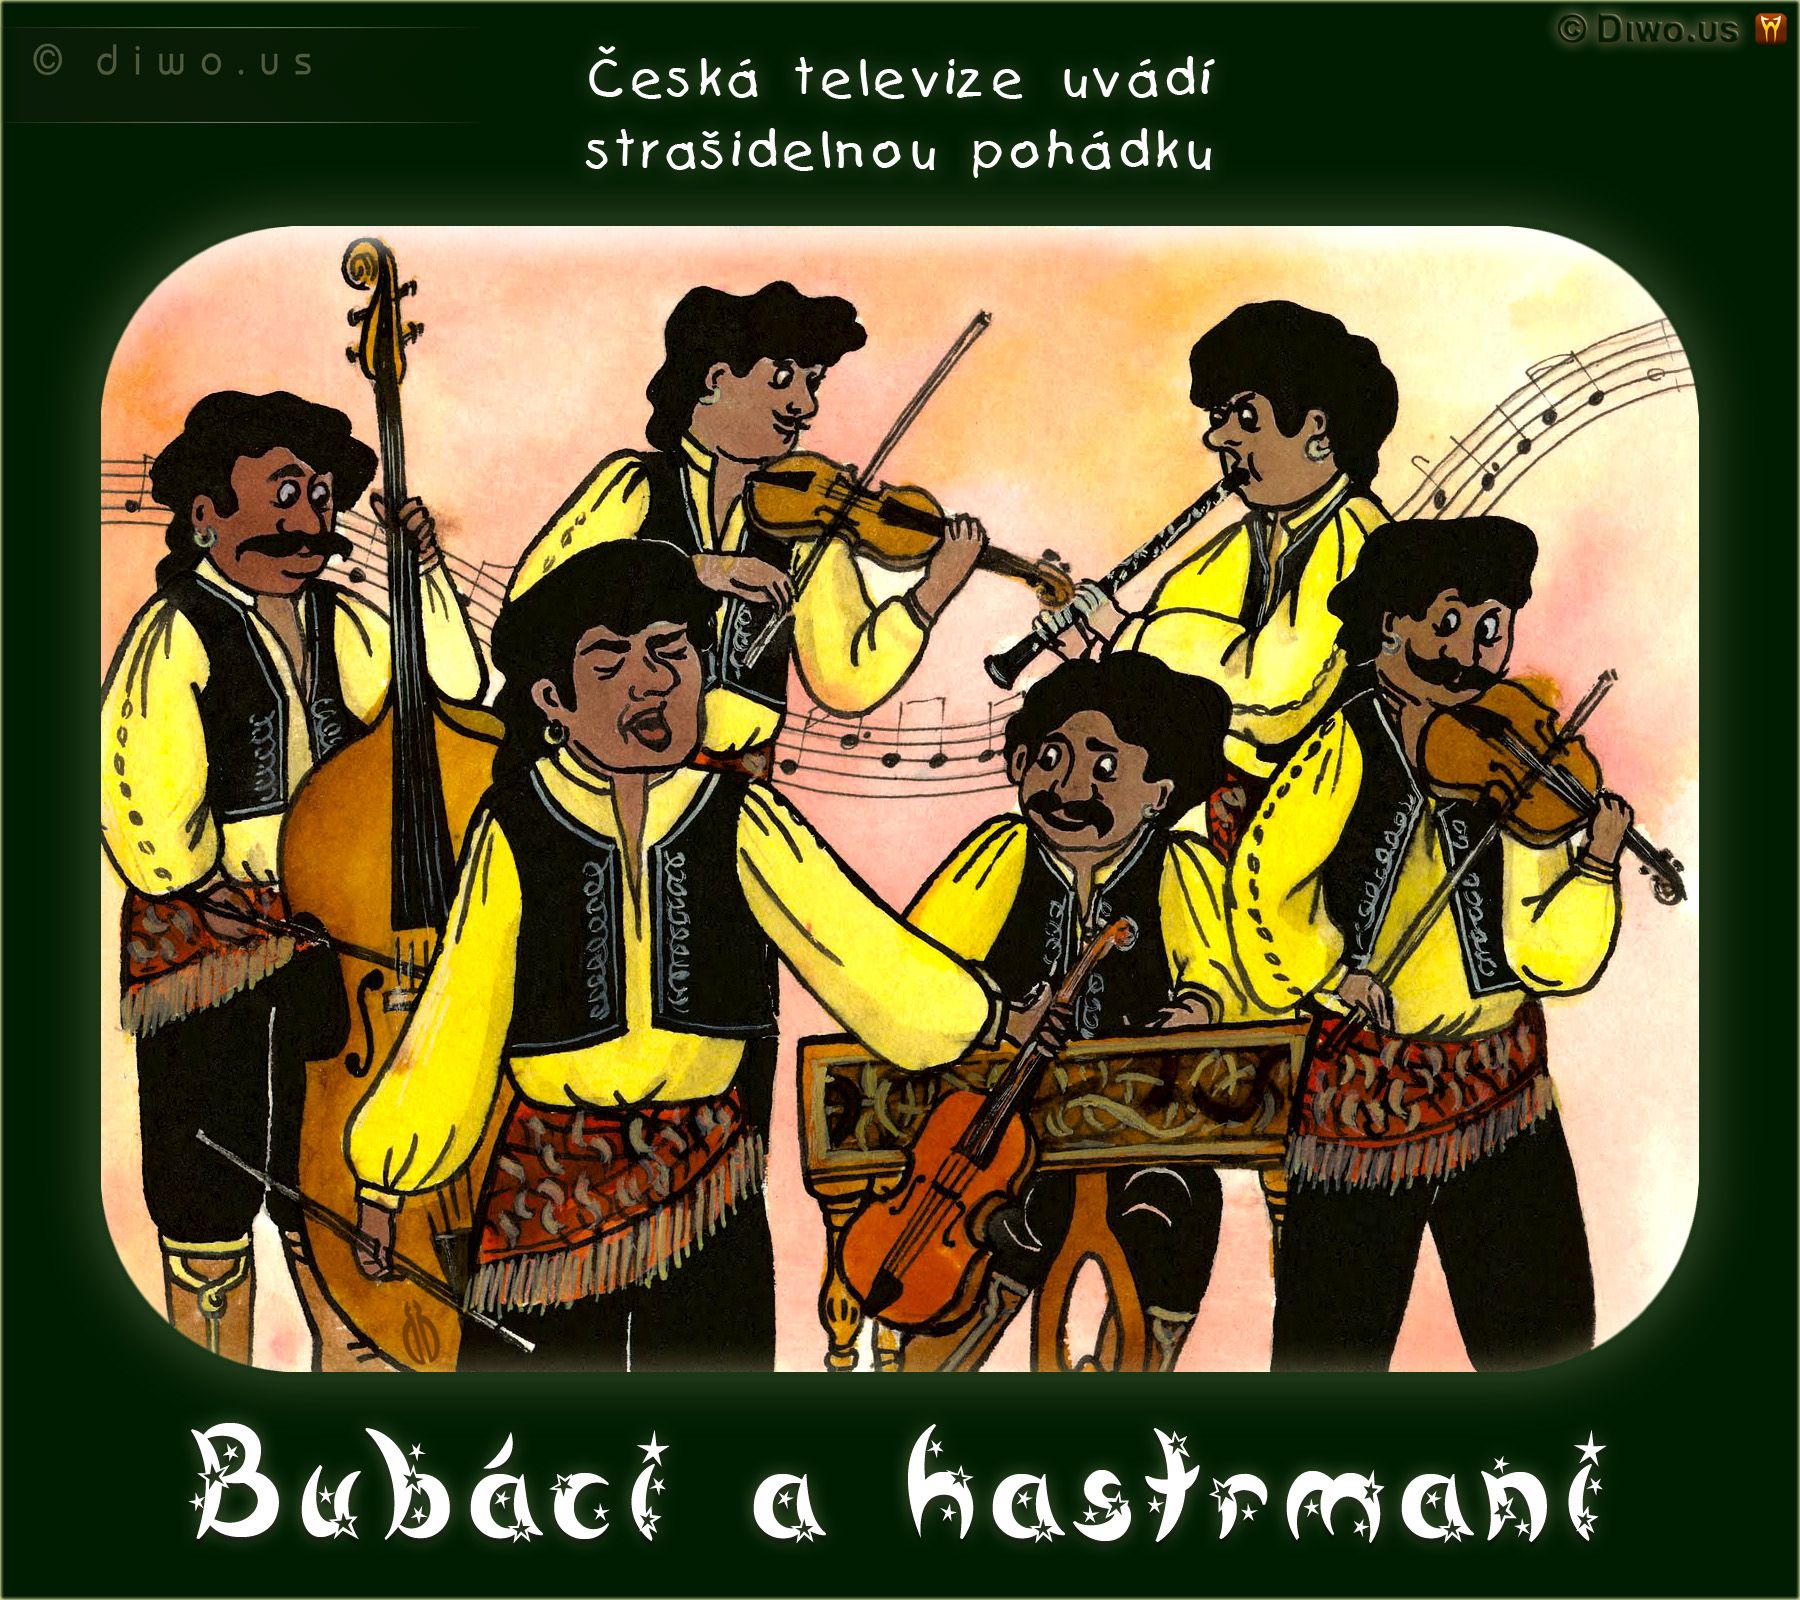 Diwous - Bubáci a hastrmani, cikáni, černý humor, romové, strašidelná pohádka, vtip, romská cikánská kapela, housle, cymbál